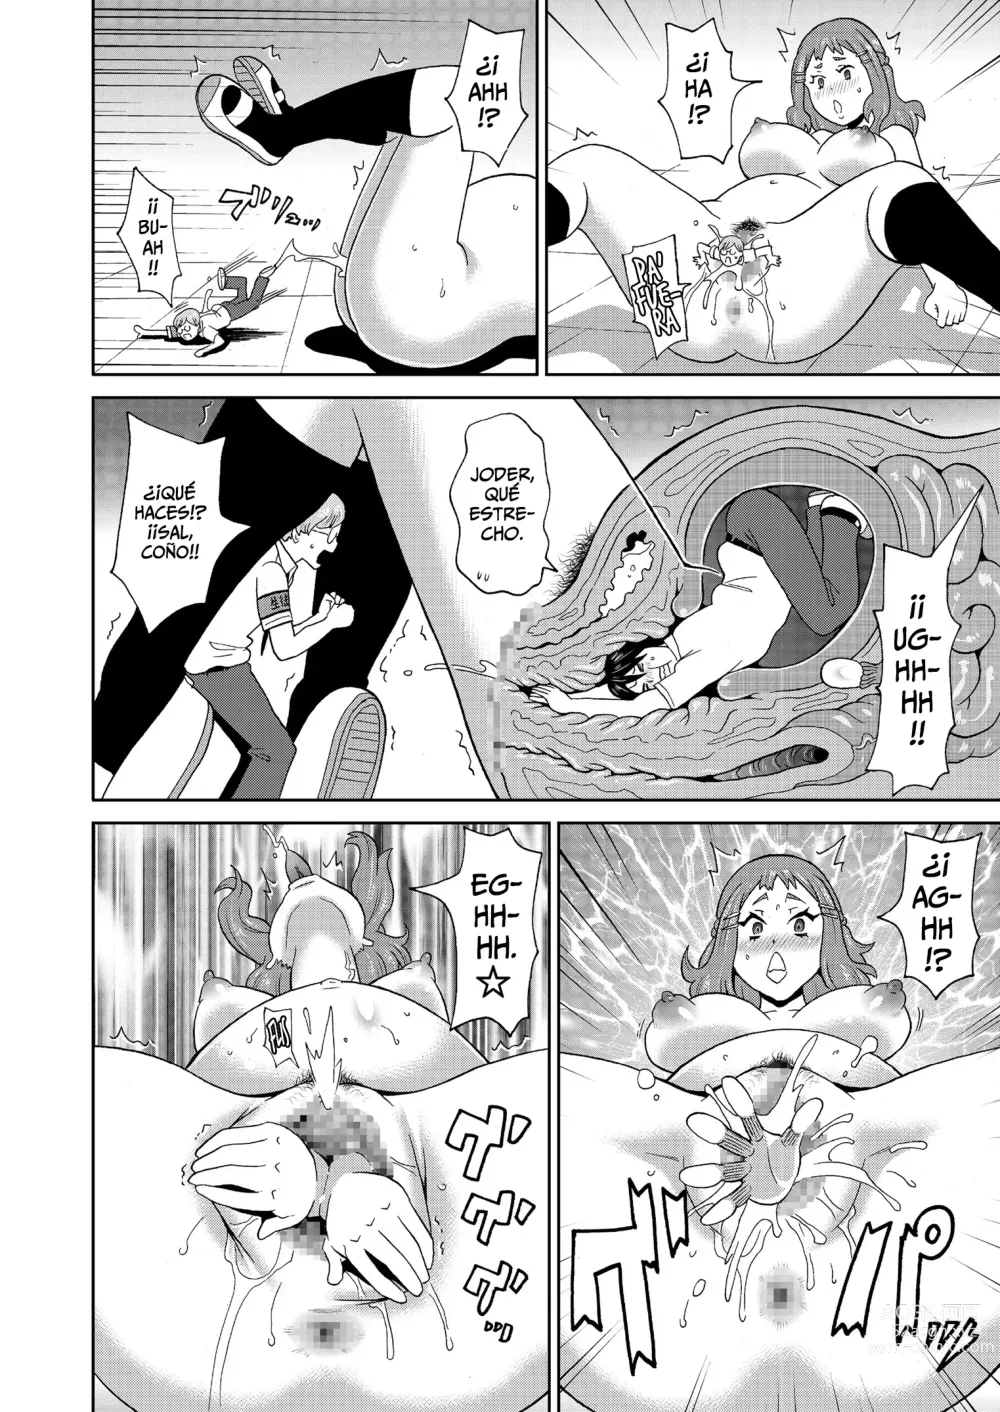 Page 20 of manga Escuadrón Suicida - Micro Kesshitai - Micro Decisive Corps